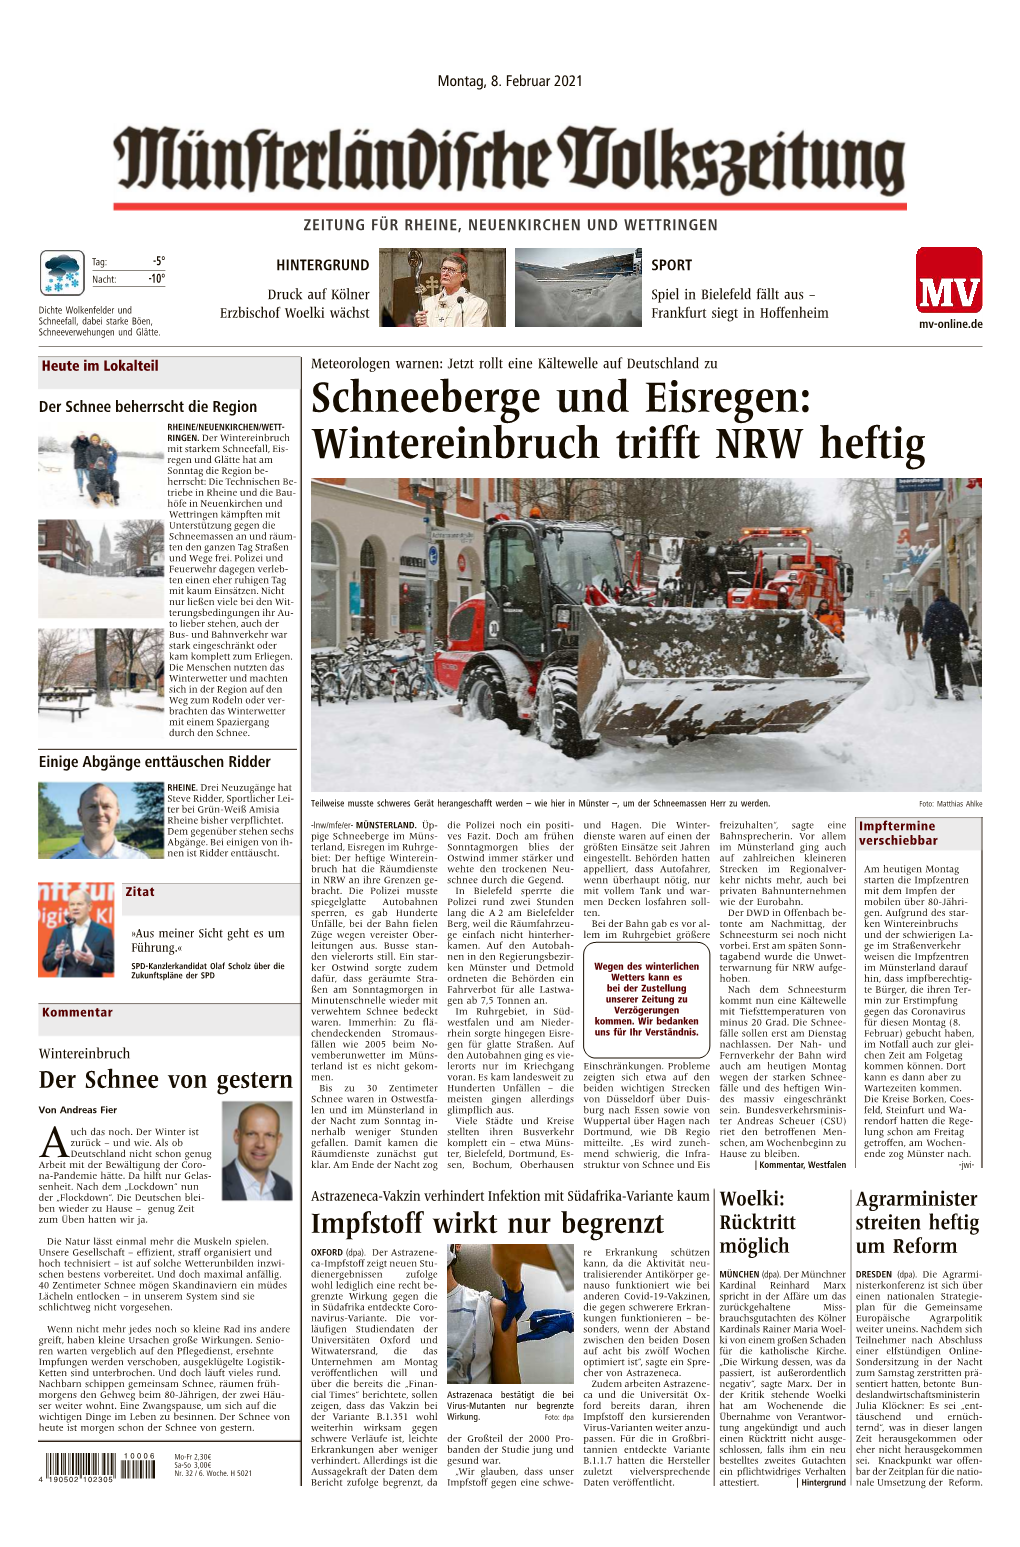 Schneeberge Und Eisregen: Wintereinbruch Trifft NRW Heftig